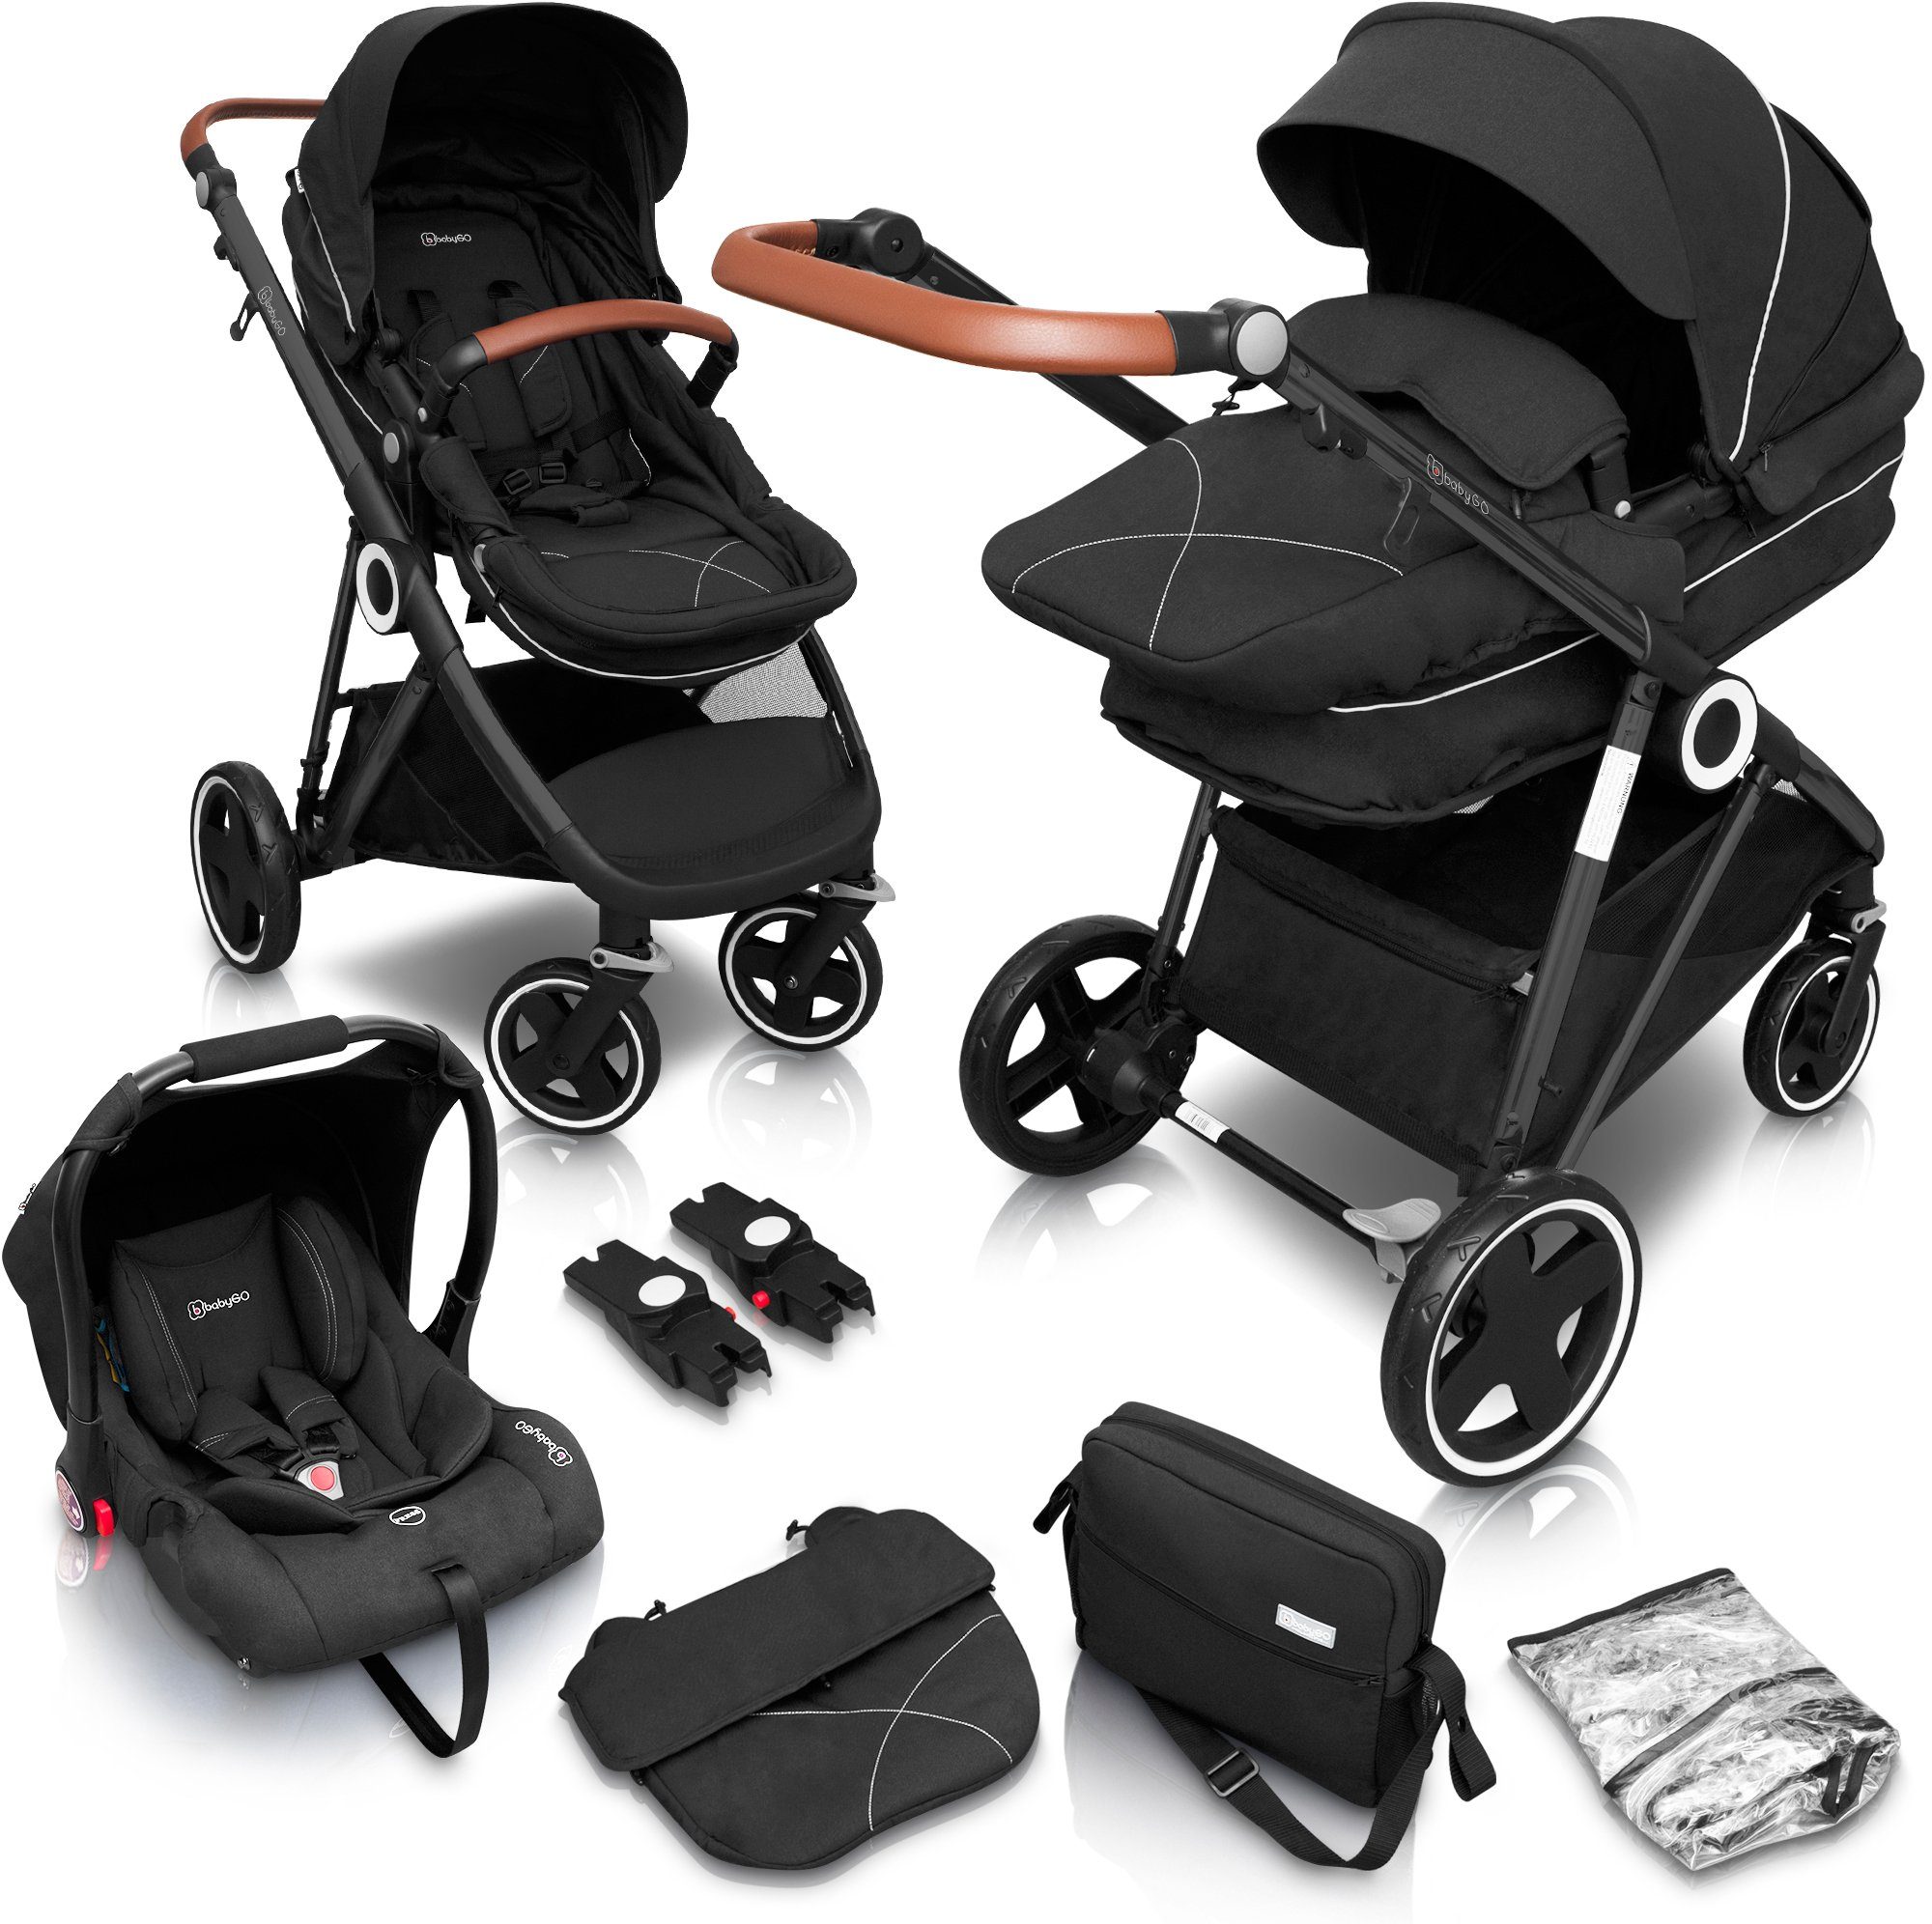 BabyGo Kombi-Kinderwagen Halime 3in1, Anthracite Black, inklusive Babywanne, Babyschale, Regenhaube & Wickeltasche